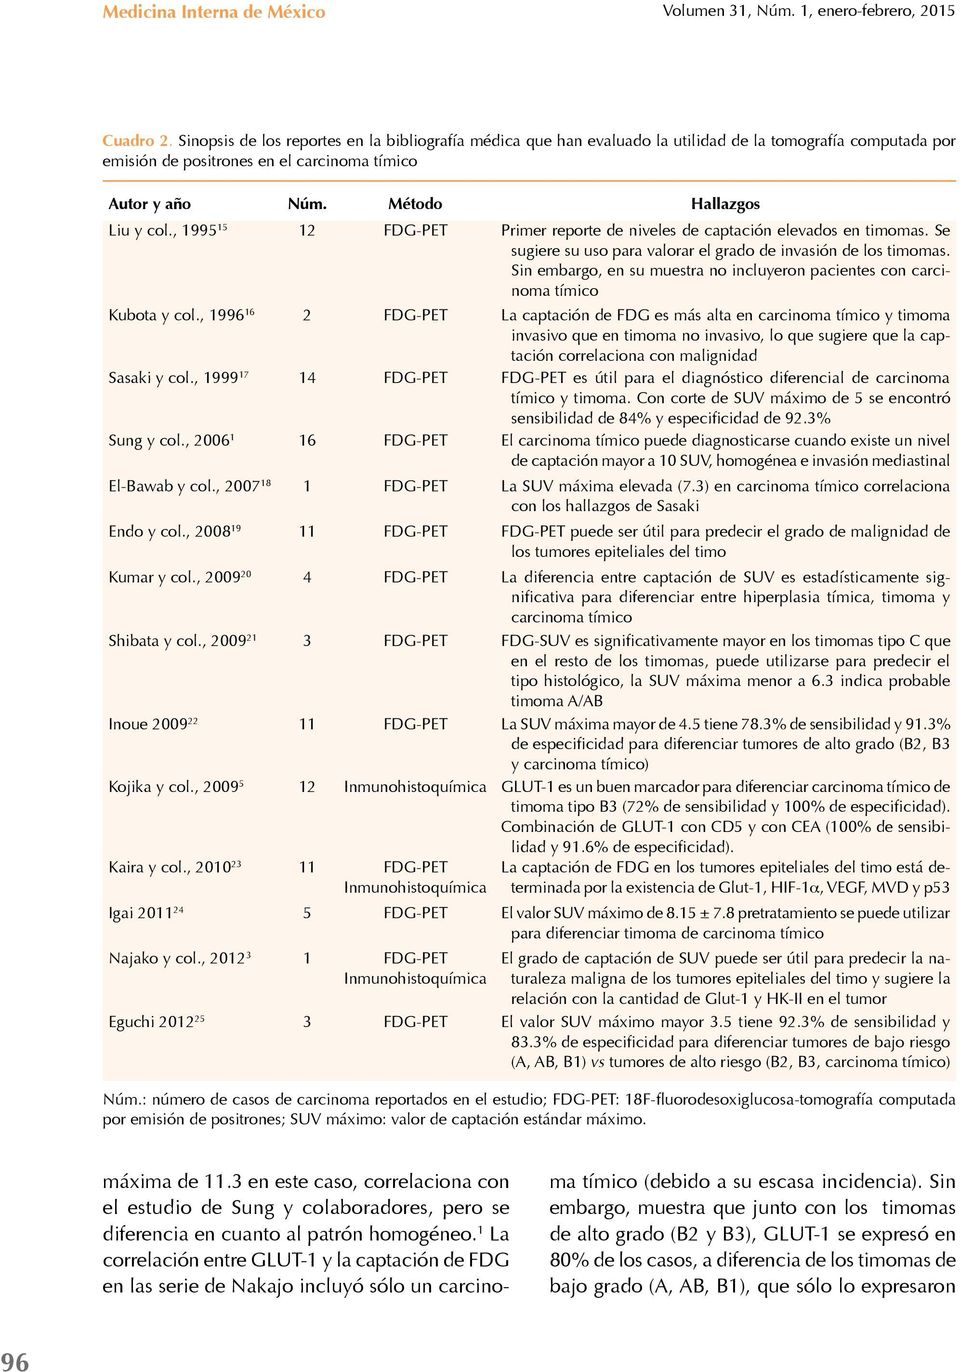 , 1995 15 12 FDG-PET Primer reporte de niveles de captación elevados en timomas. Se sugiere su uso para valorar el grado de invasión de los timomas.